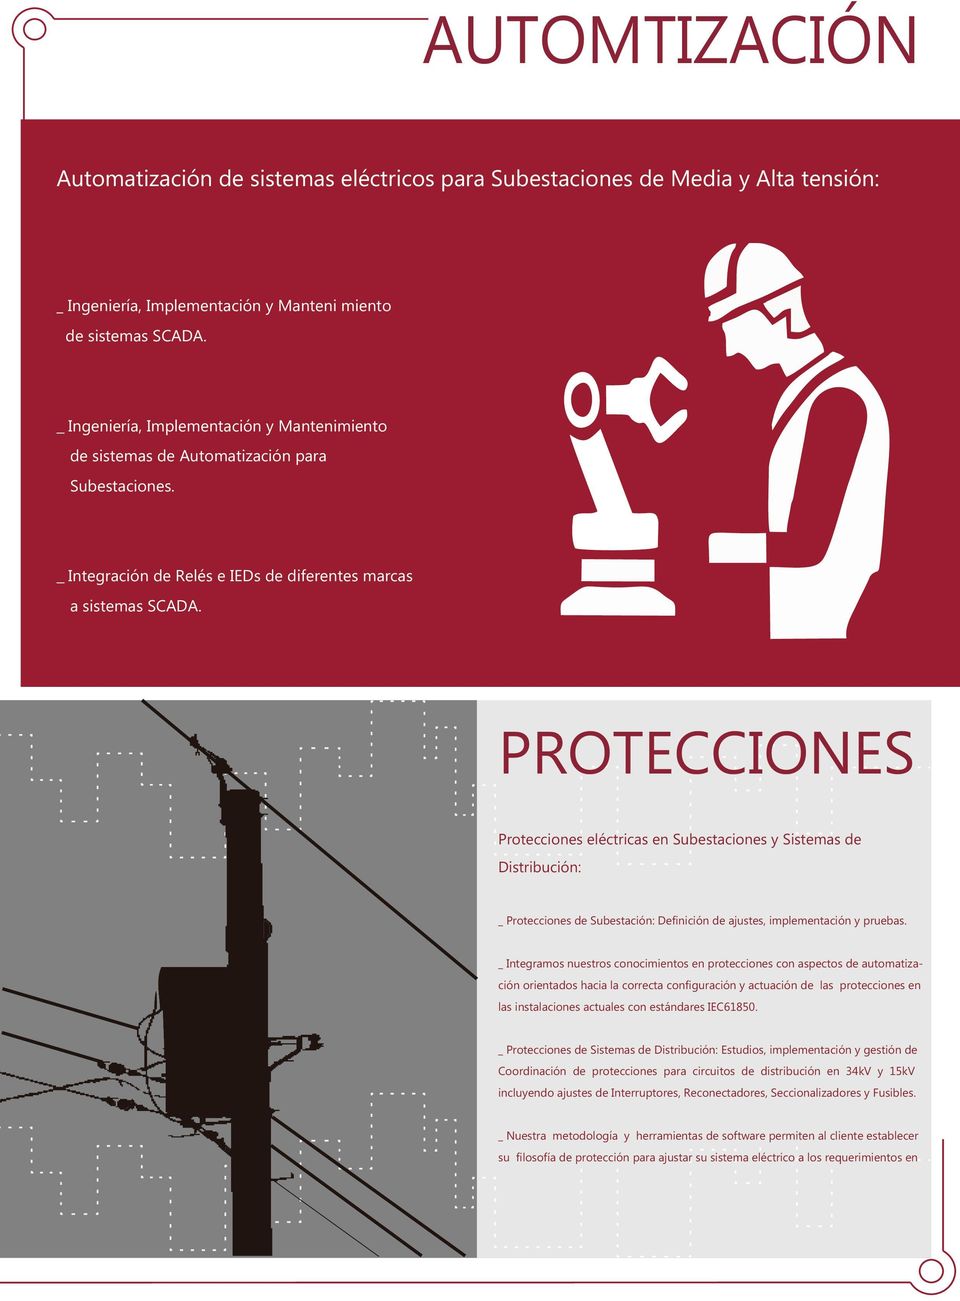 PROTECCIONES Protecciones eléctricas en Subestaciones y Sistemas de Distribución: _ Protecciones de Subestación: Definición de ajustes, implementación y pruebas.